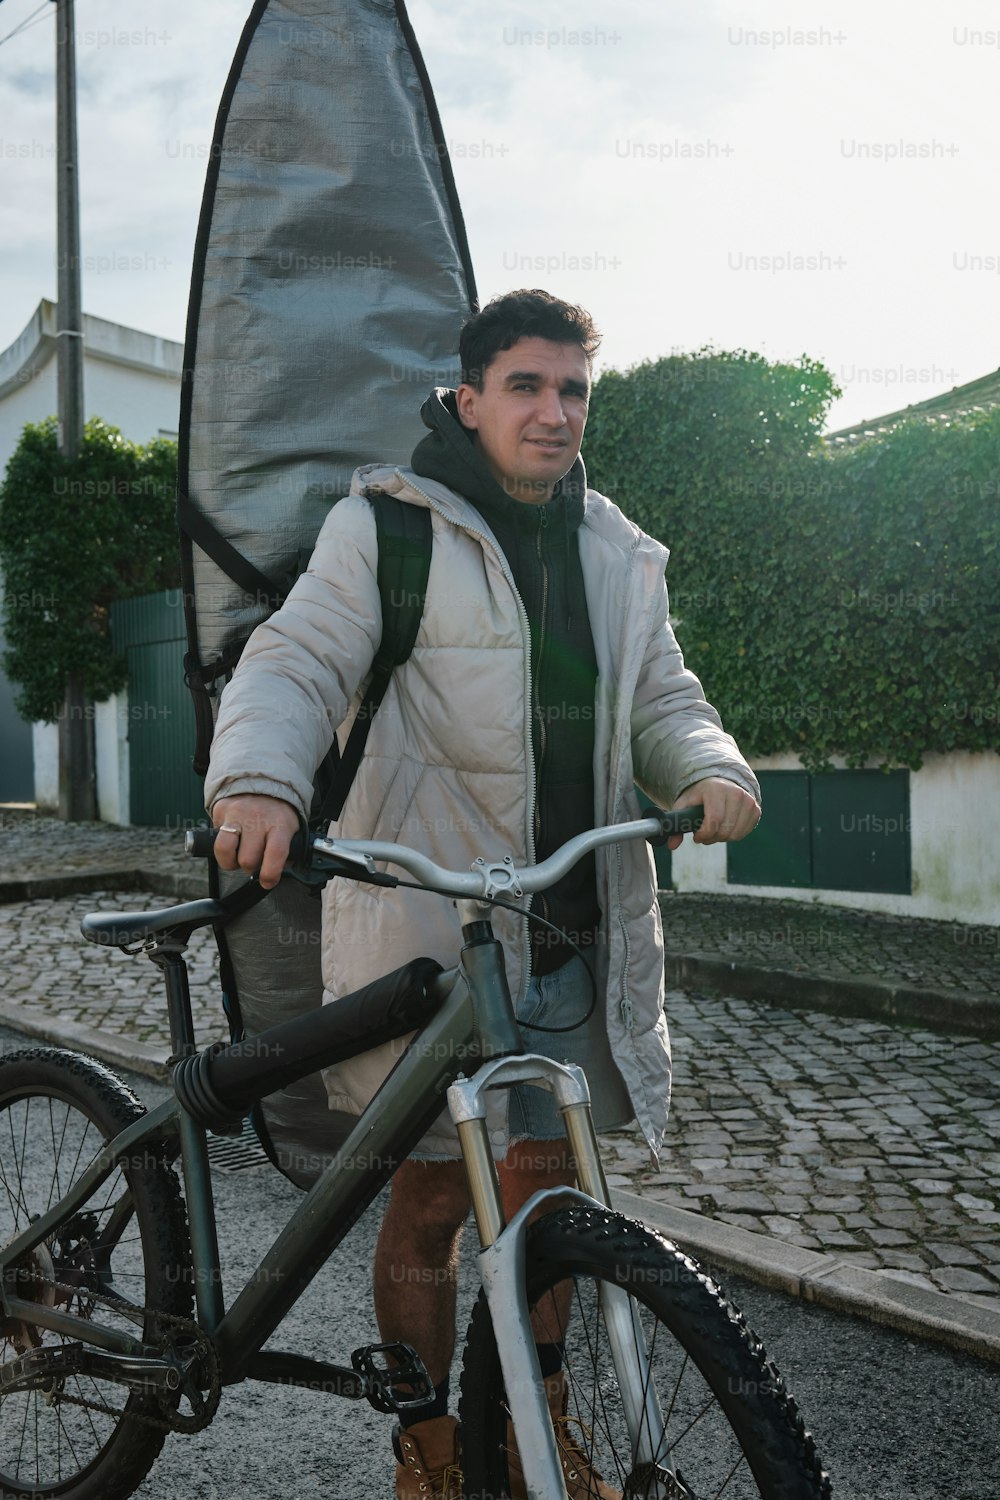 Imágenes de Bicicleta Tándem  Descarga imágenes gratuitas en Unsplash